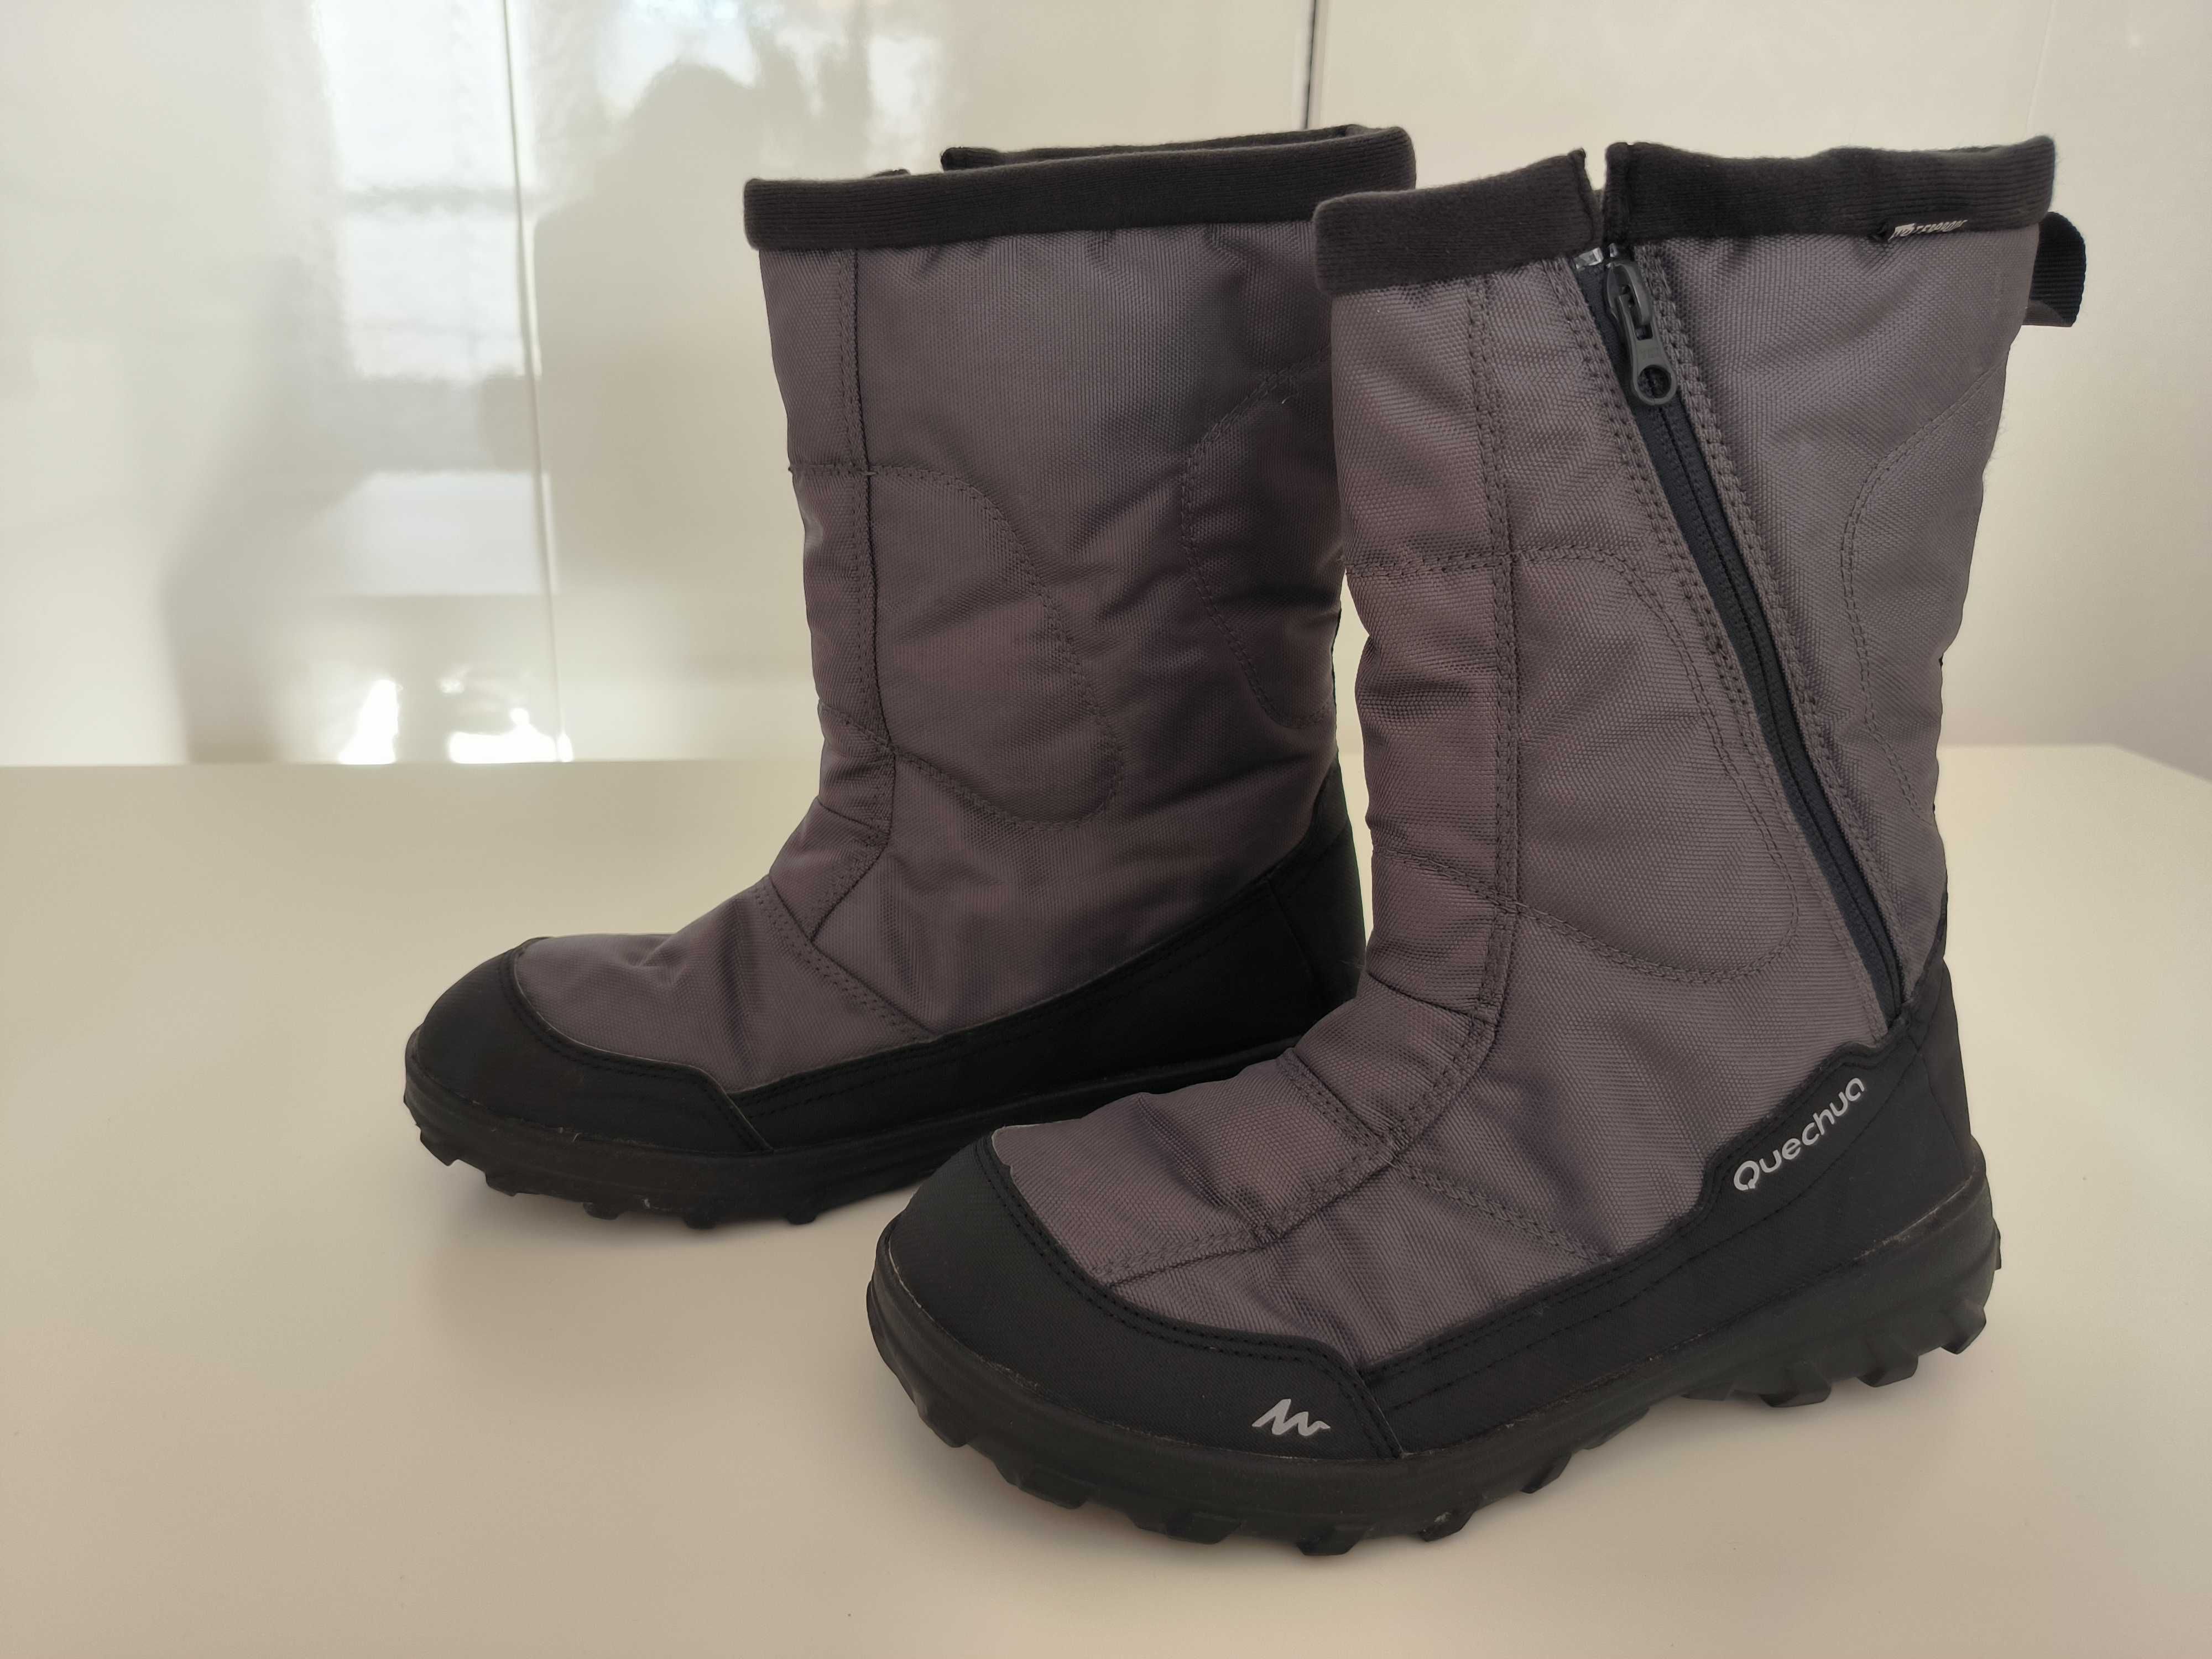 Buty śniegowce Quechua SH100 - roz. 39